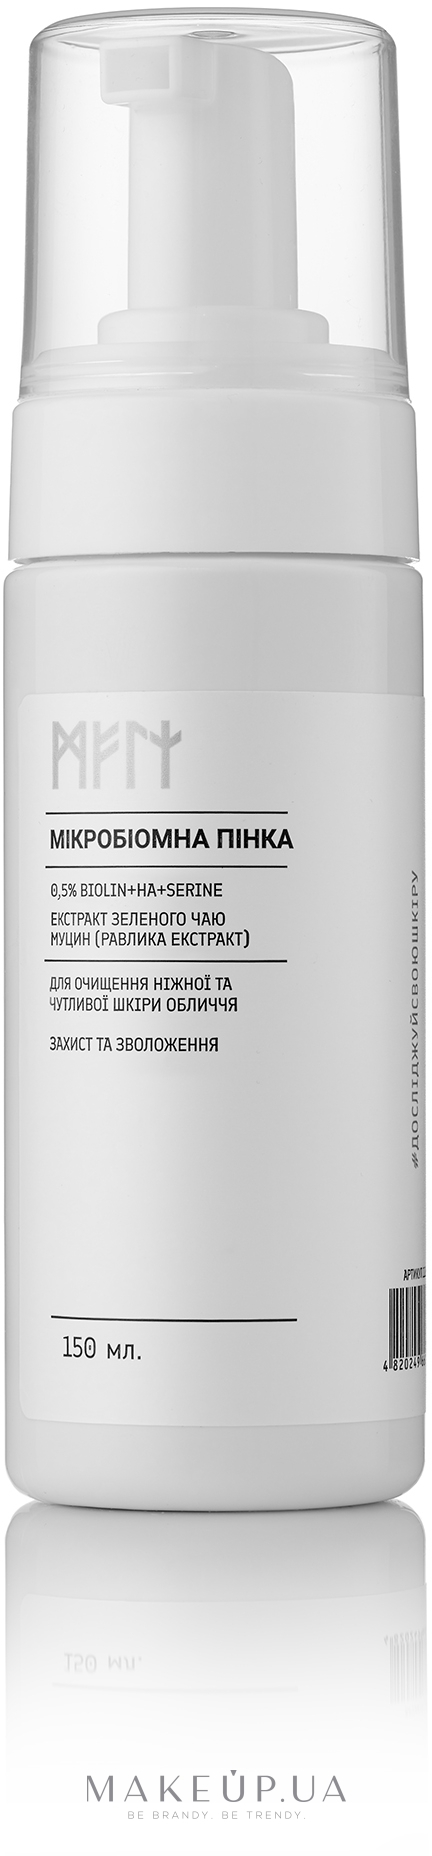 Мікробіомна пінка для очищення ніжної й чутливої шкіри обличчя - Meli 0,5% Biolin + HA + Serine — фото 150ml